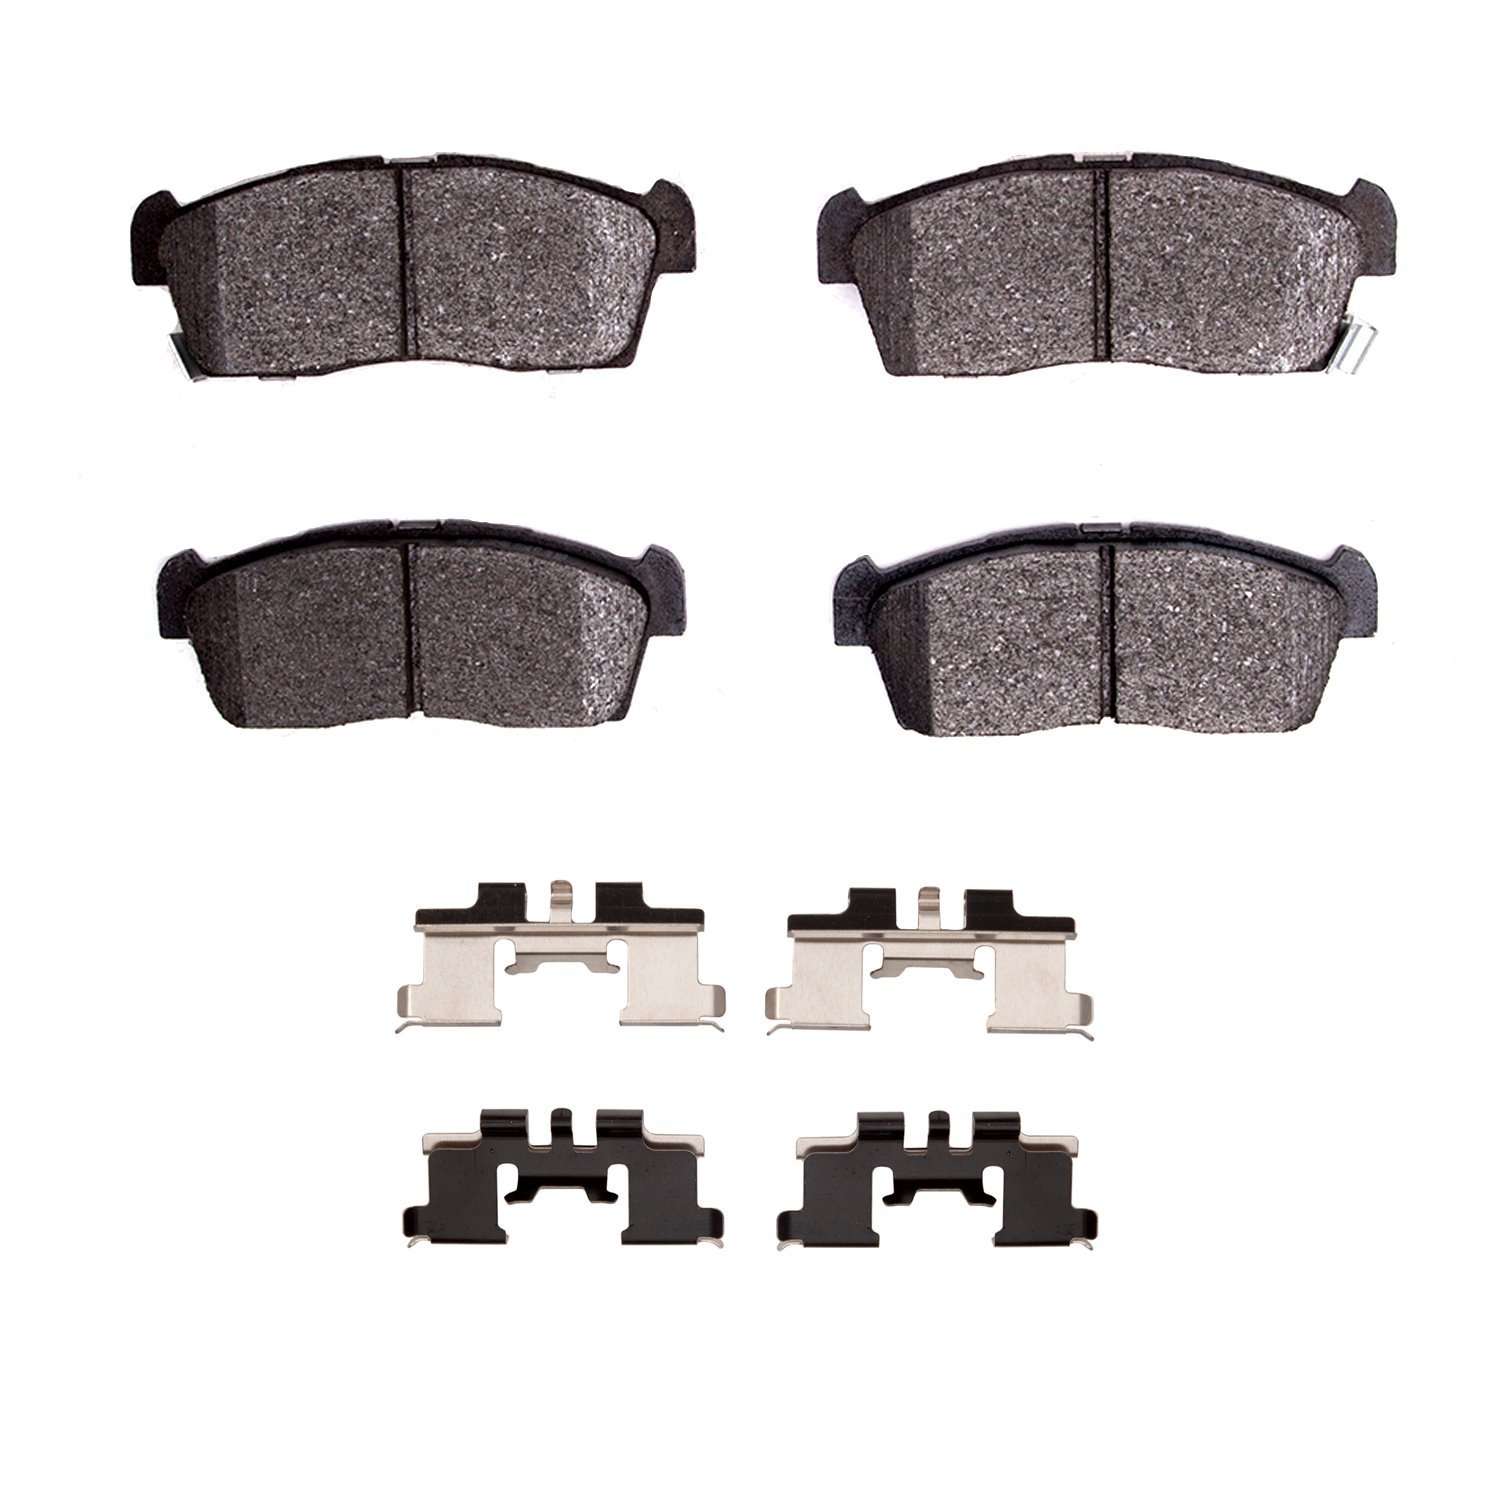 1551-1658-01 5000 Advanced Ceramic Brake Pads & Hardware Kit, 2012-2017 Mitsubishi, Position: Front